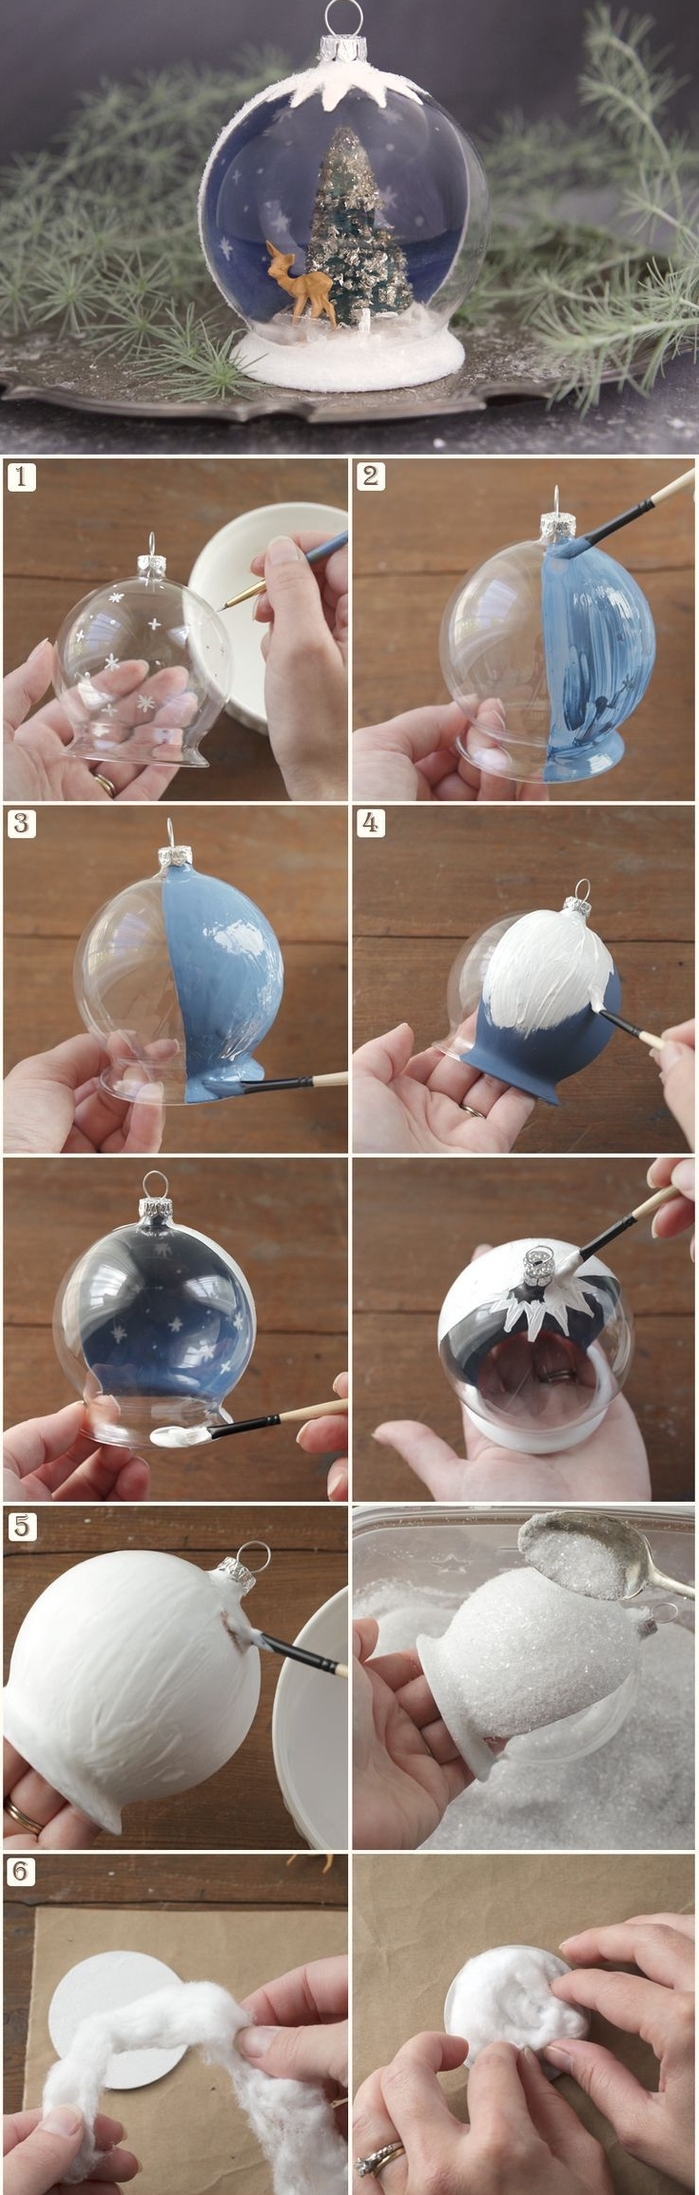 idée pour une decoration de noel fait main qui représente une boule de neige semi-transparente à peinture effet neige, avec des figurines de noël à l intérieur du globe